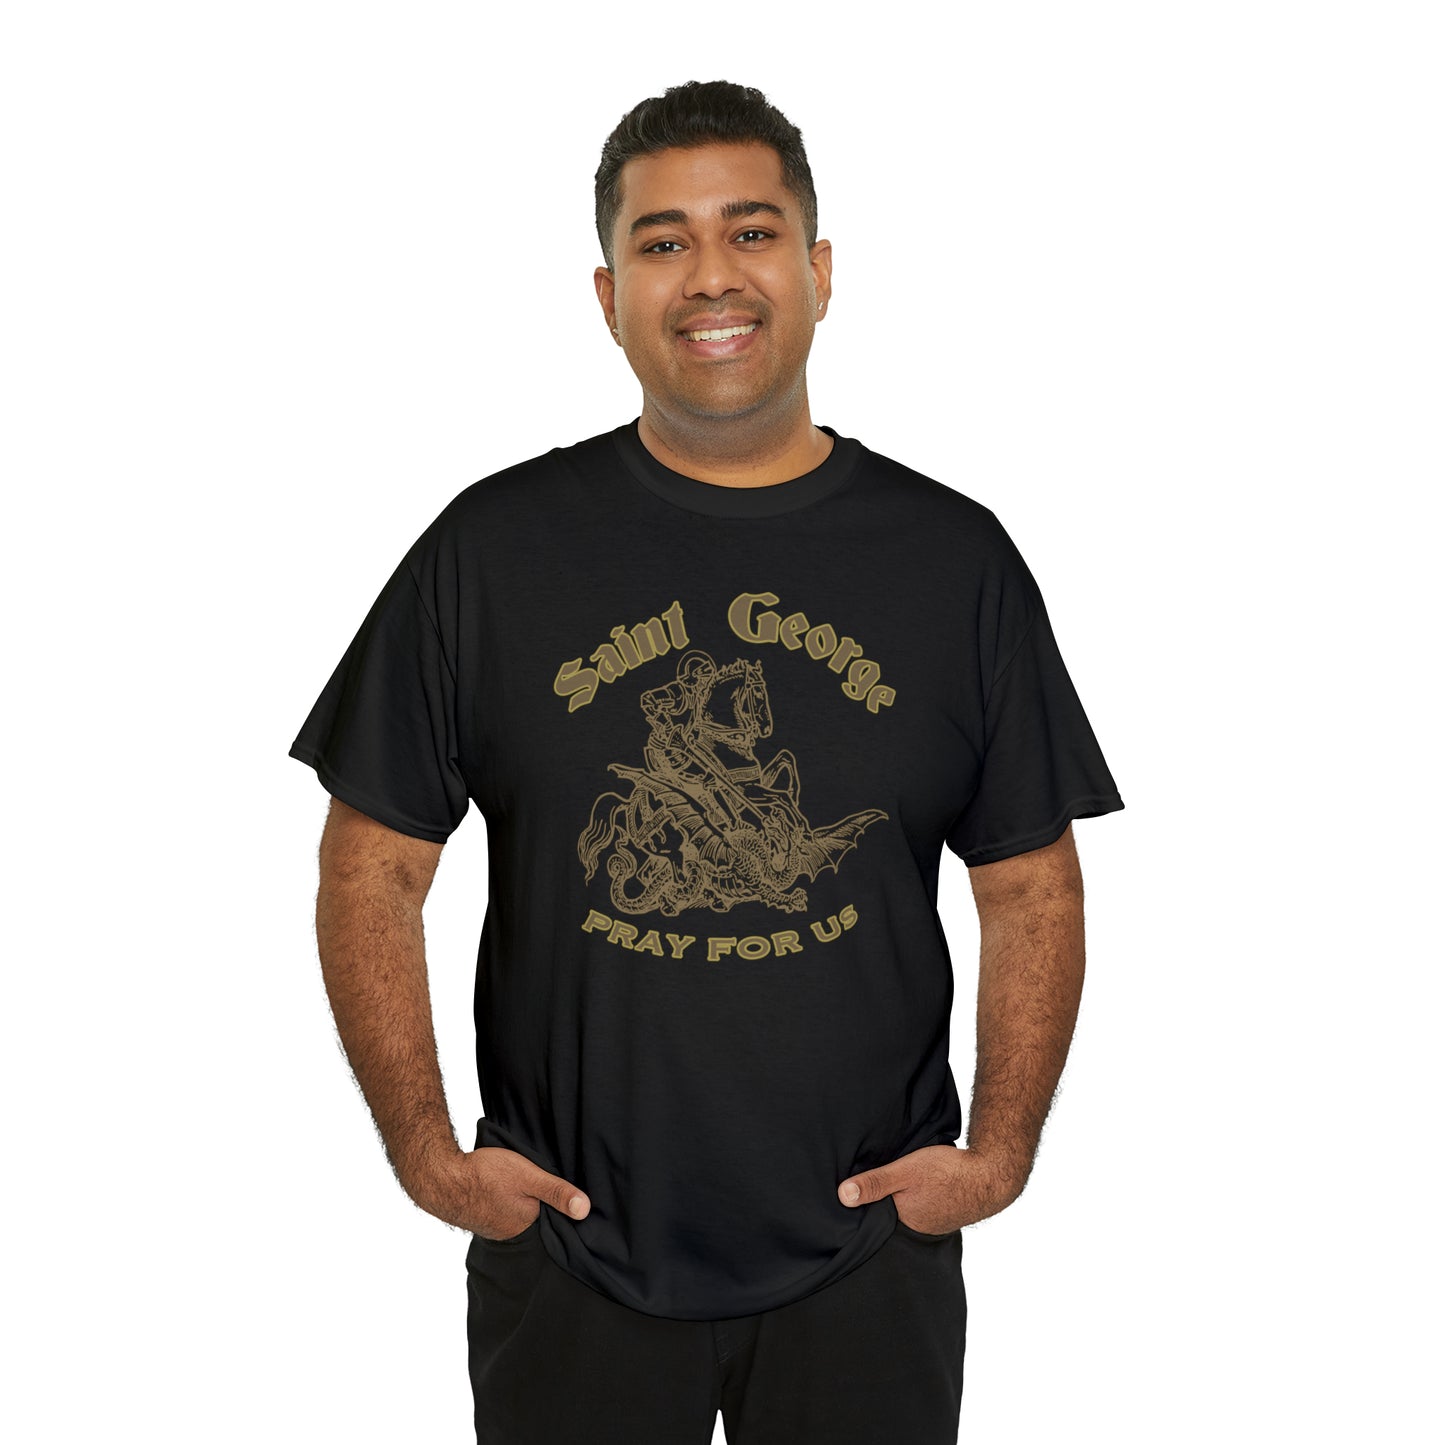 St. George Catholic T-Shirt